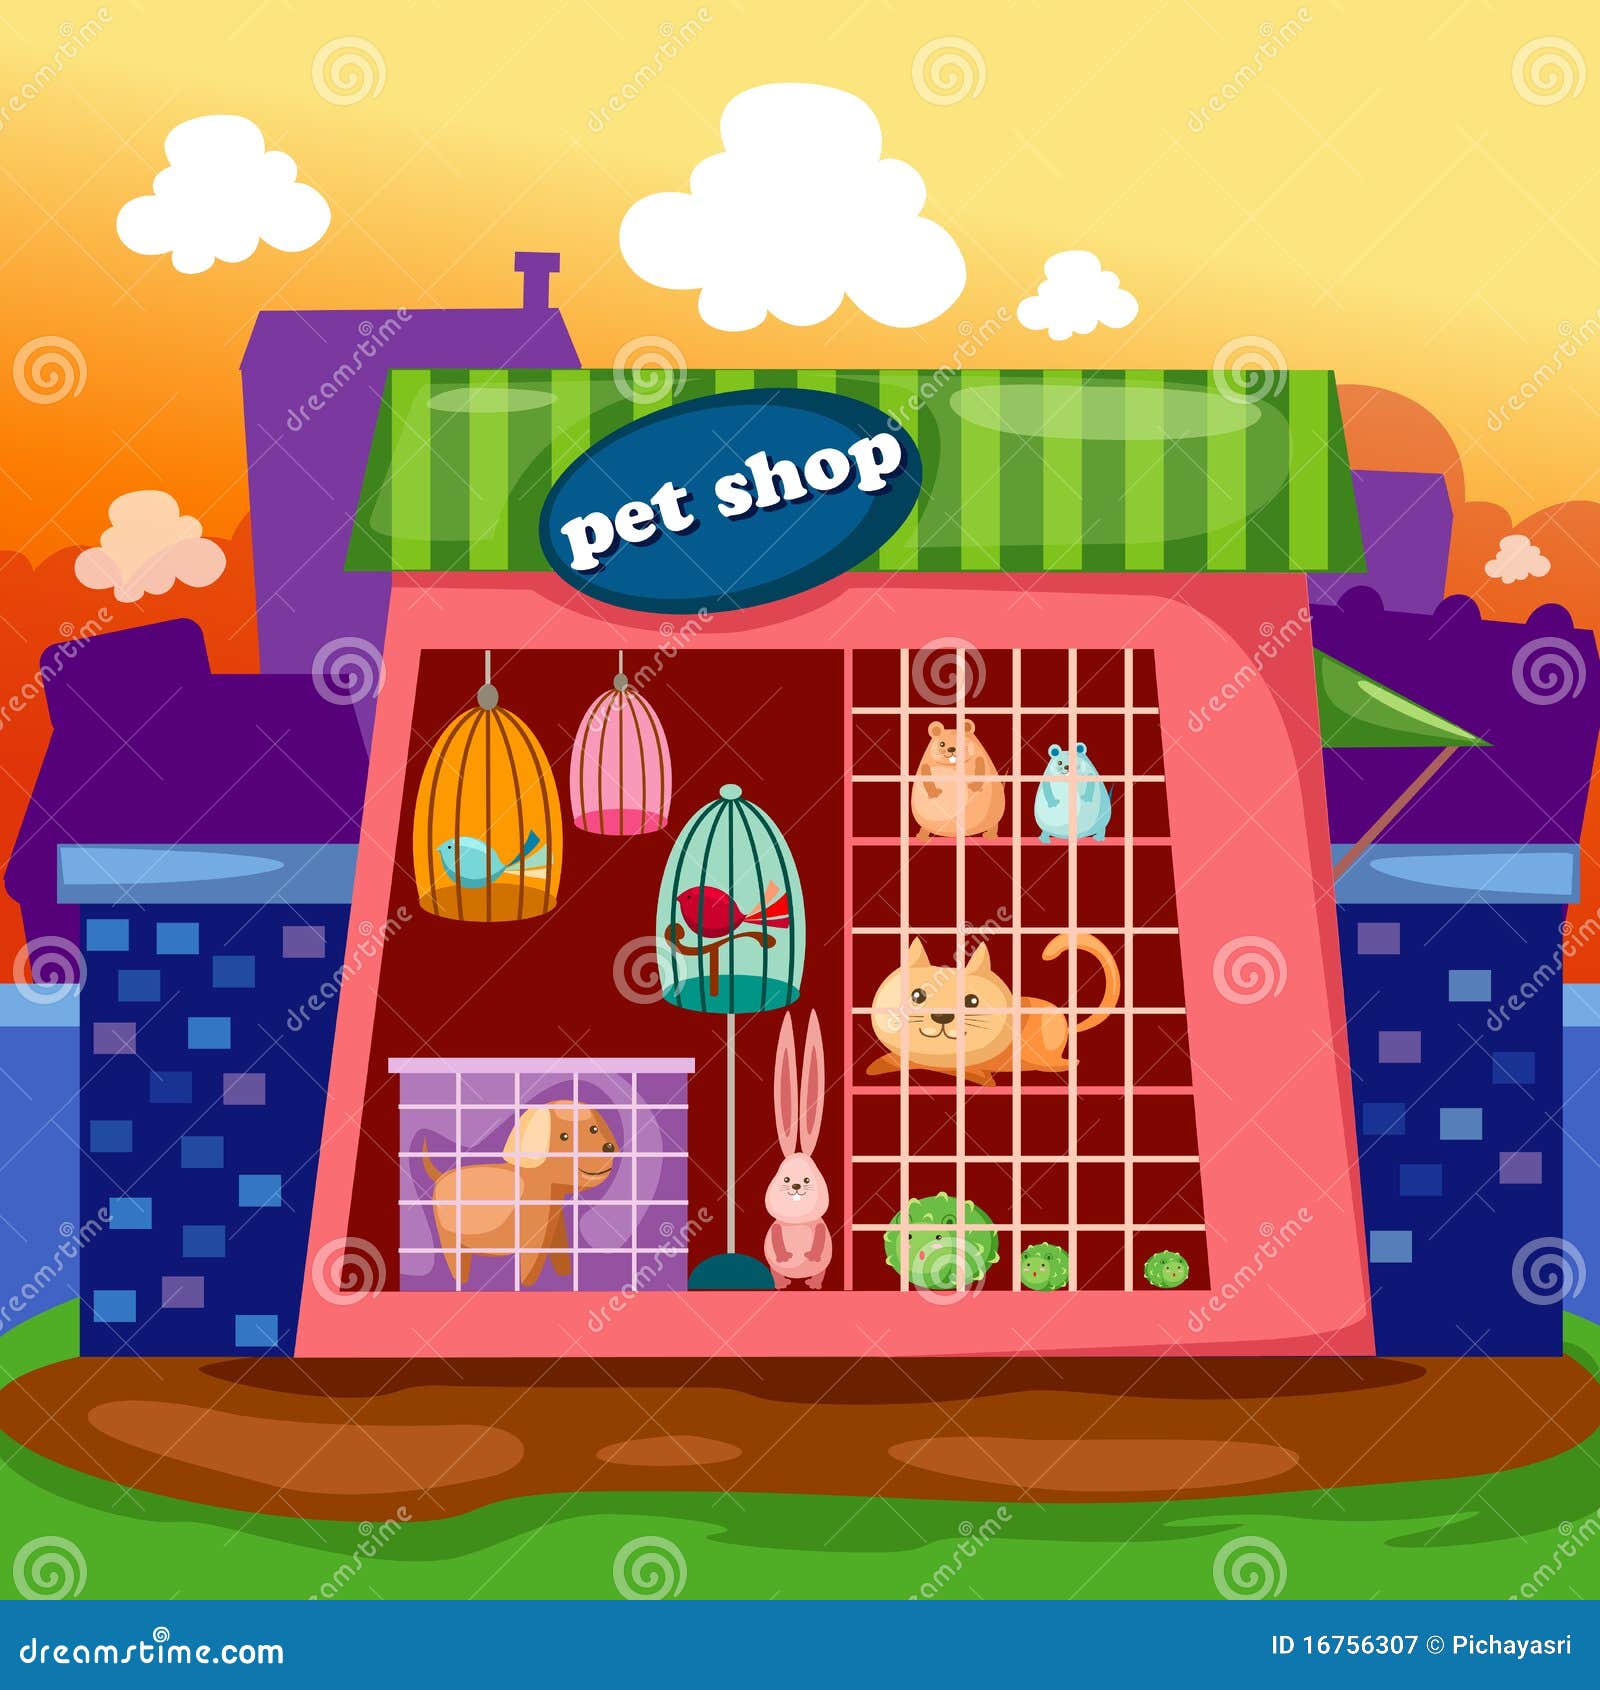 free clip art pet shop - photo #13